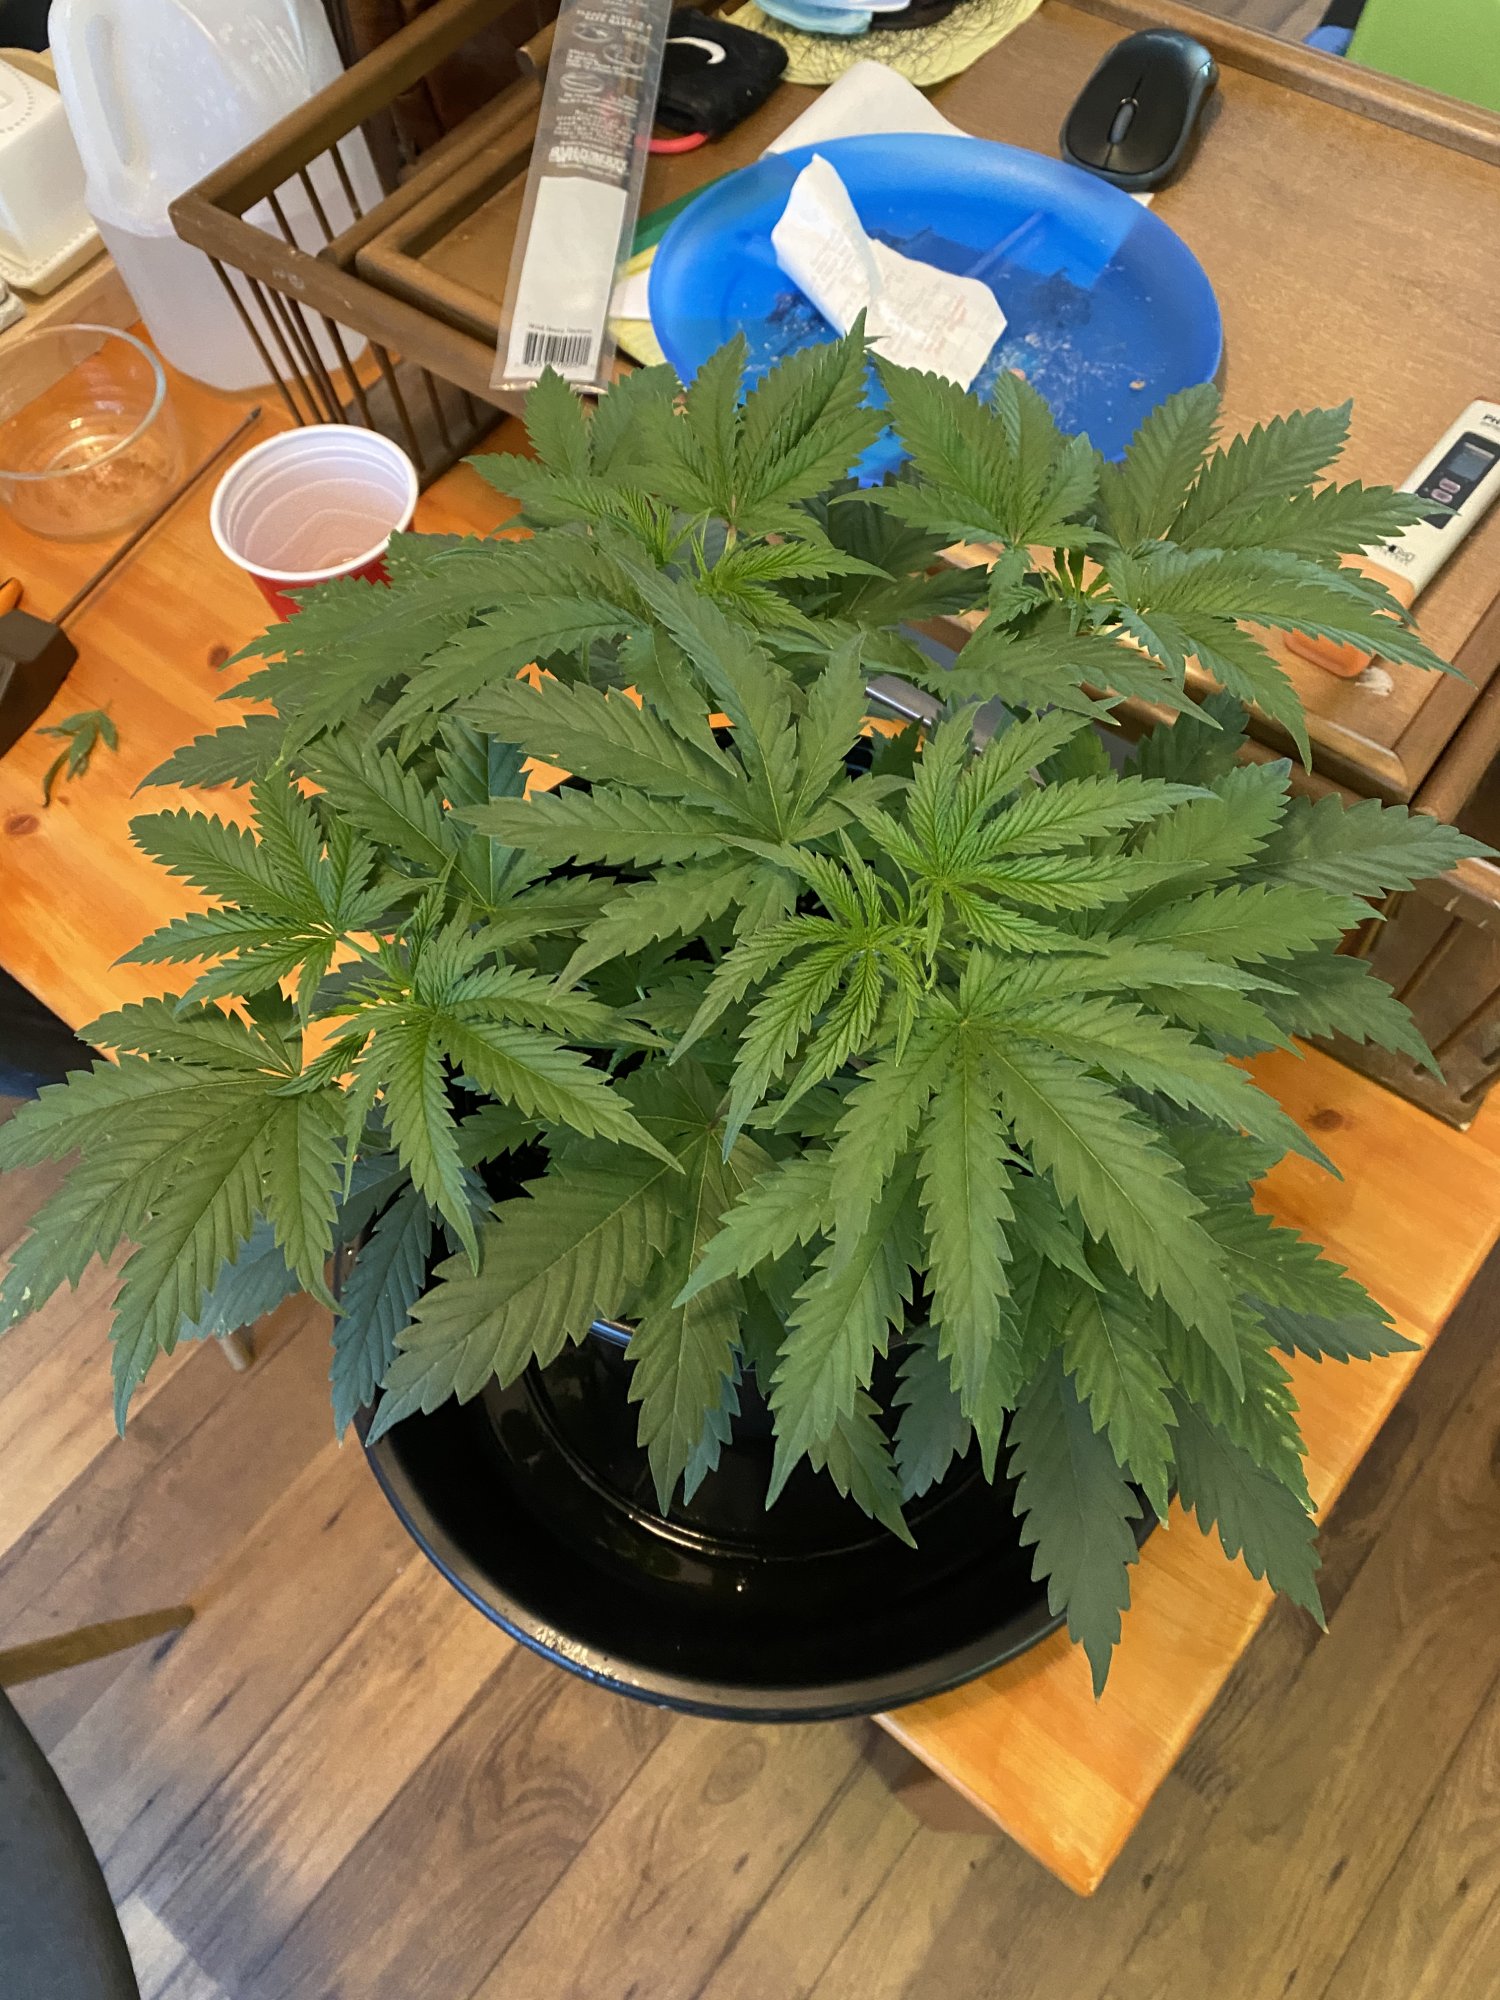 New grower   first grow update 4